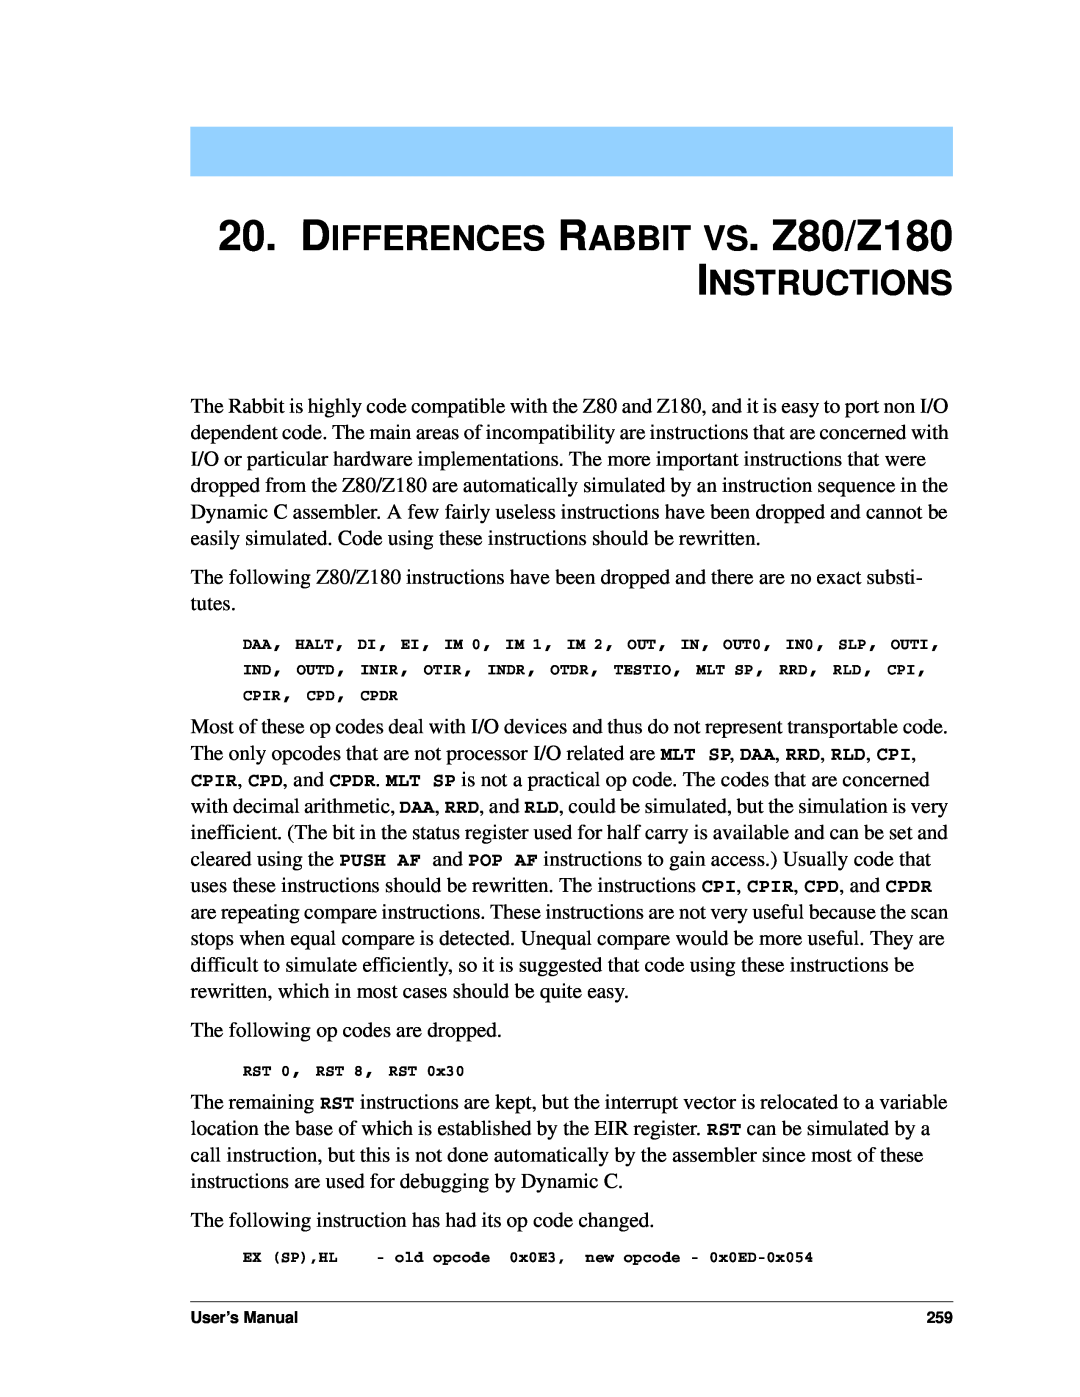 Jameco Electronics 3000, 2000 manual DIFFERENCES RABBIT VS. Z80/Z180 INSTRUCTIONS 